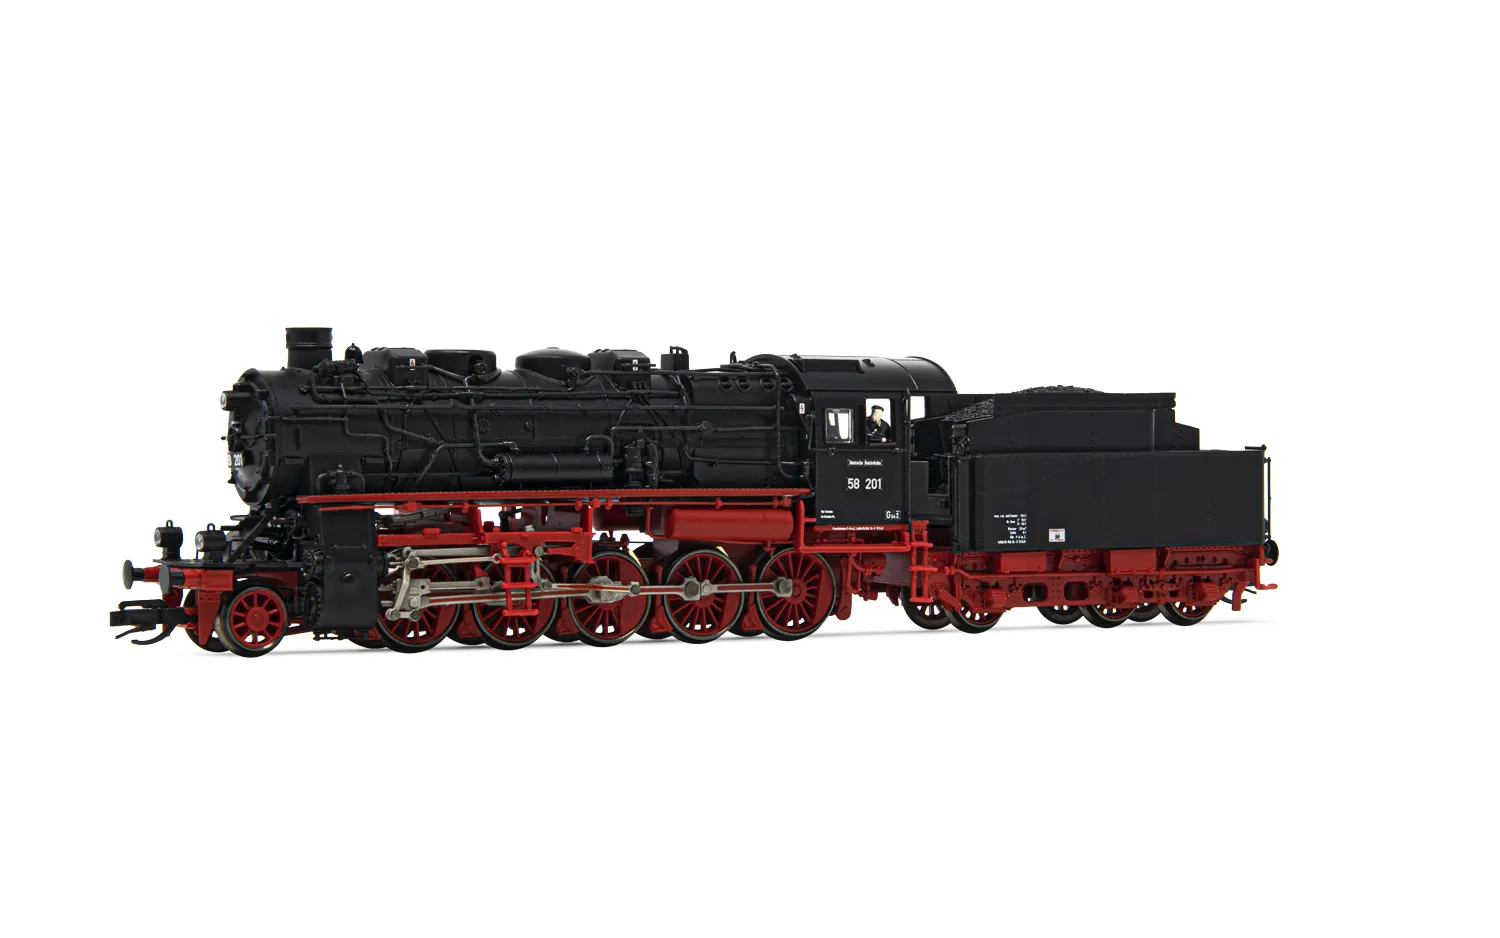 DR, Dampflokomotive 58 201, mit vierdomigem Kessel, in schwarz/roter Lackierung, Ep. III